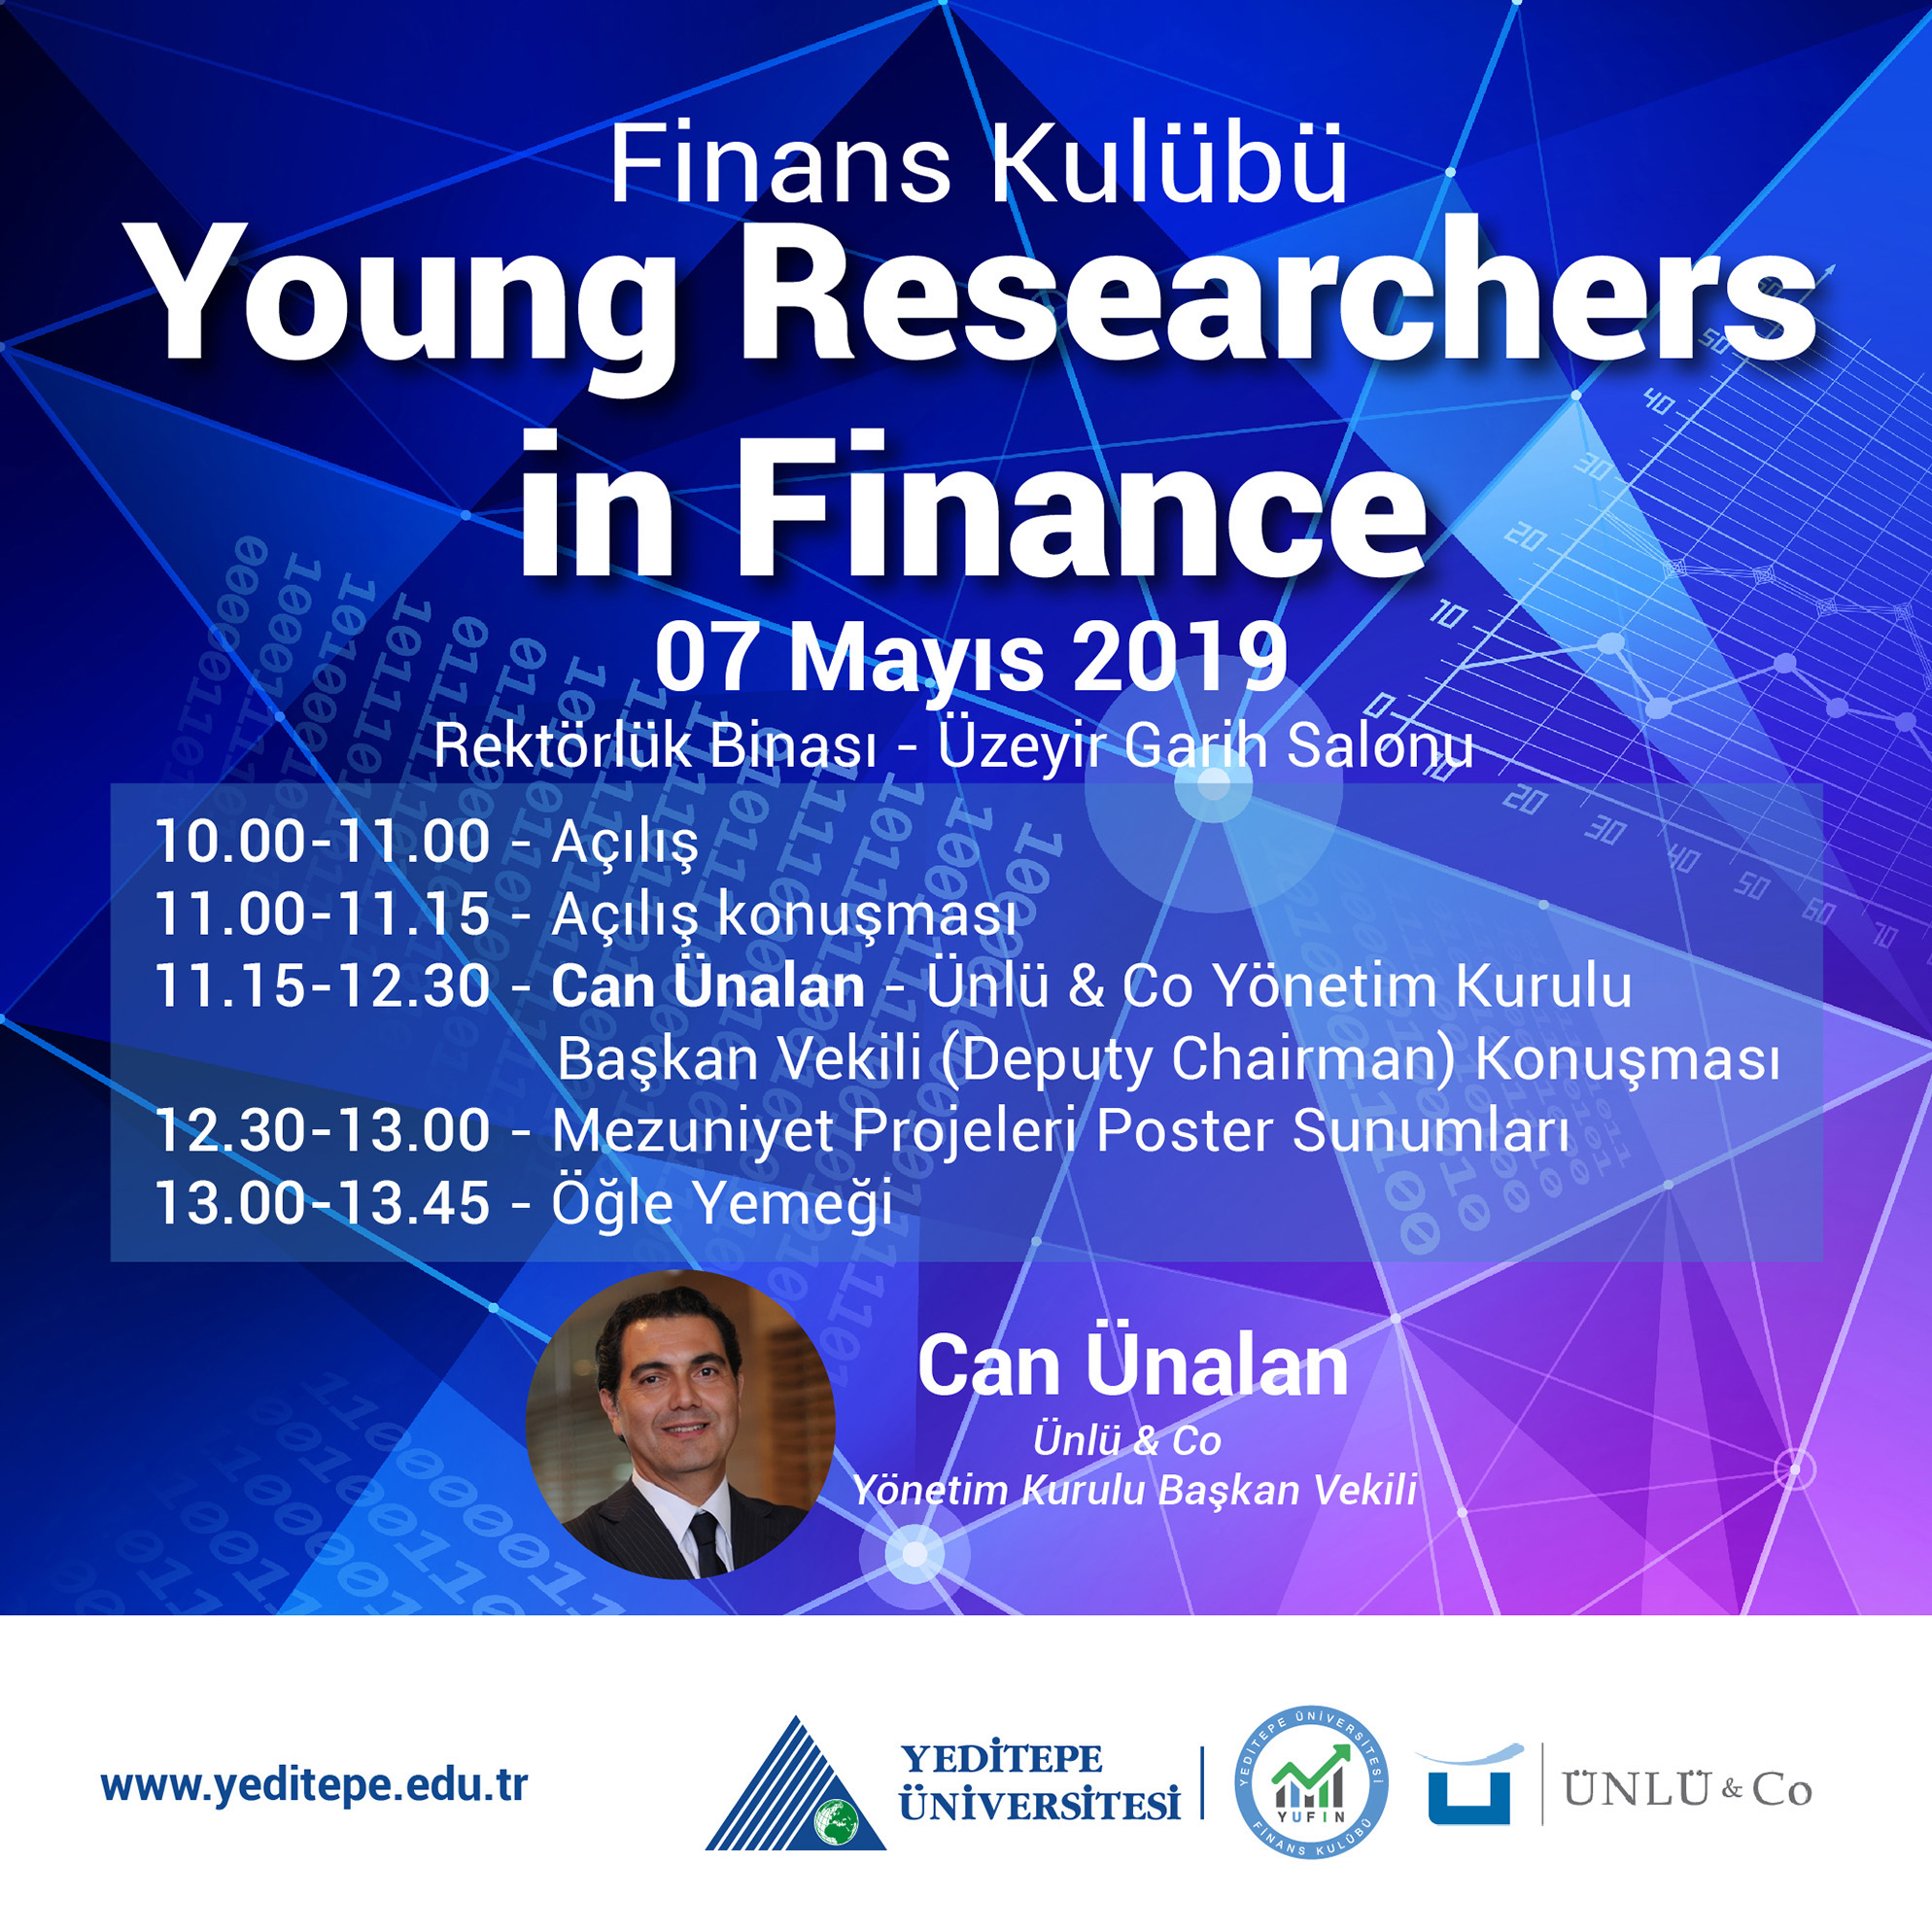 Finans Kulübü - Young Researchers in Finance